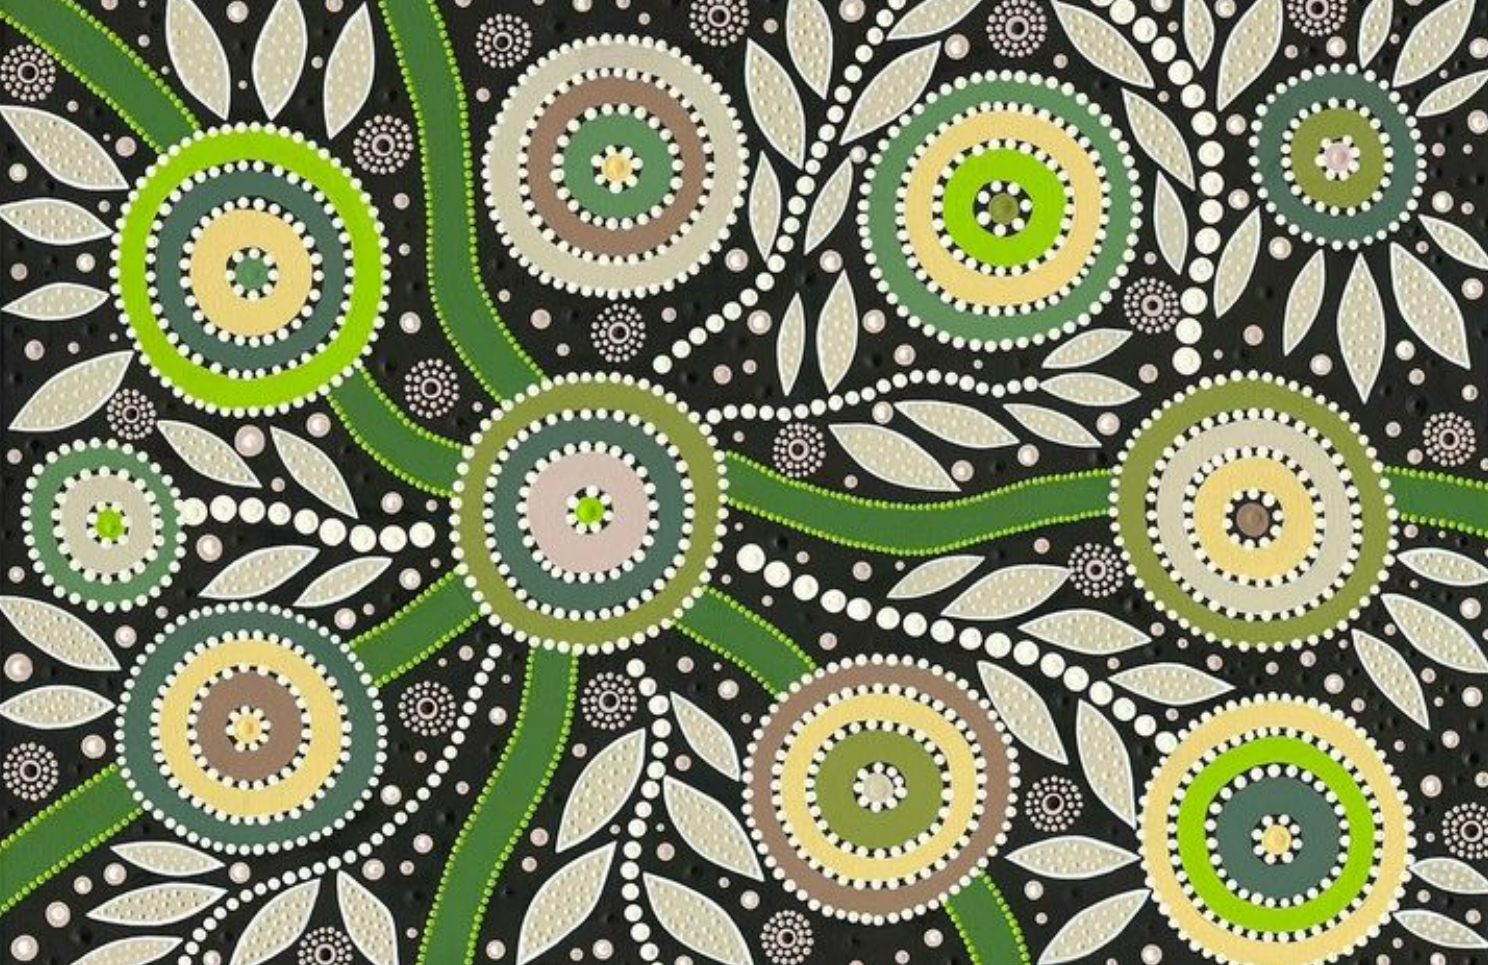 Lola Anne aboriginal art work